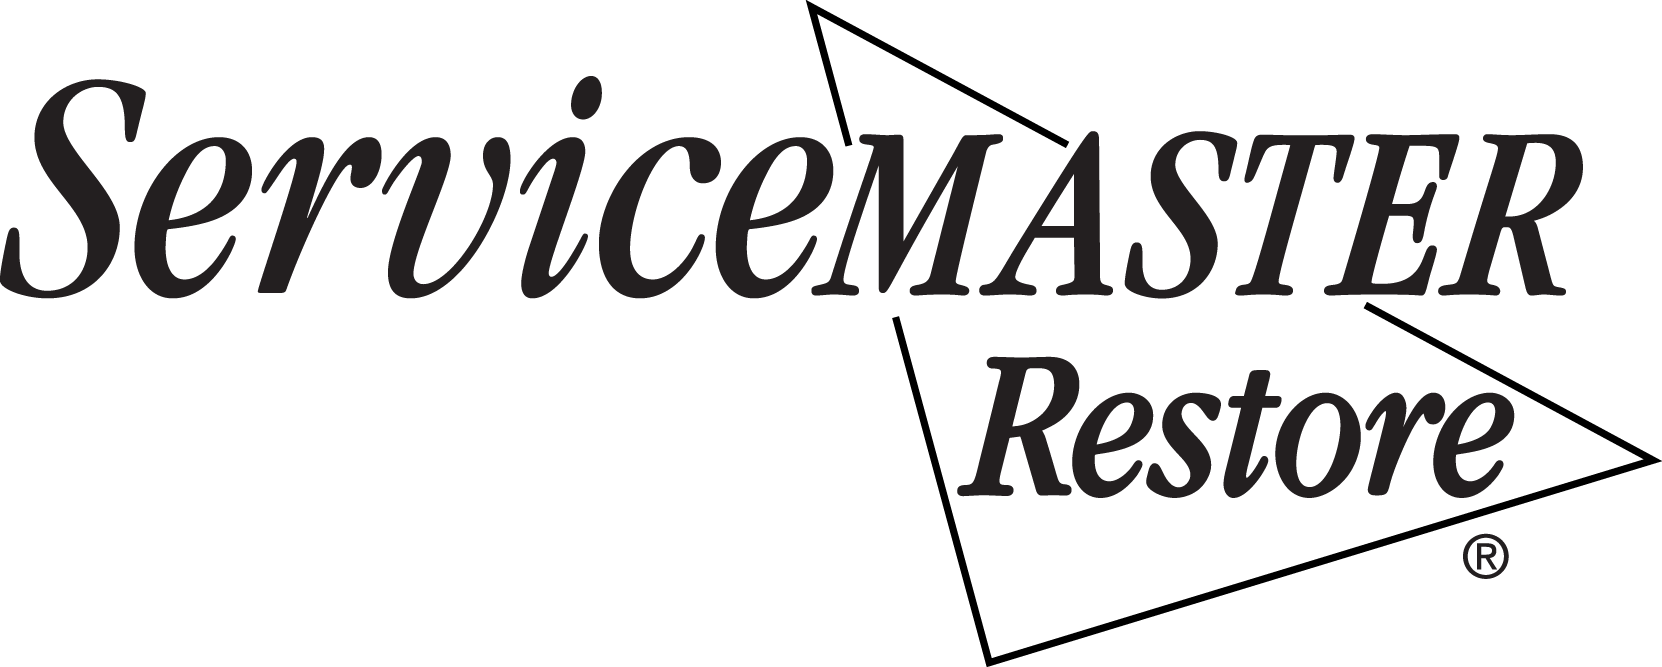 ServiceMaster Restoration by Prasad - Unlicensed Contractor Logo